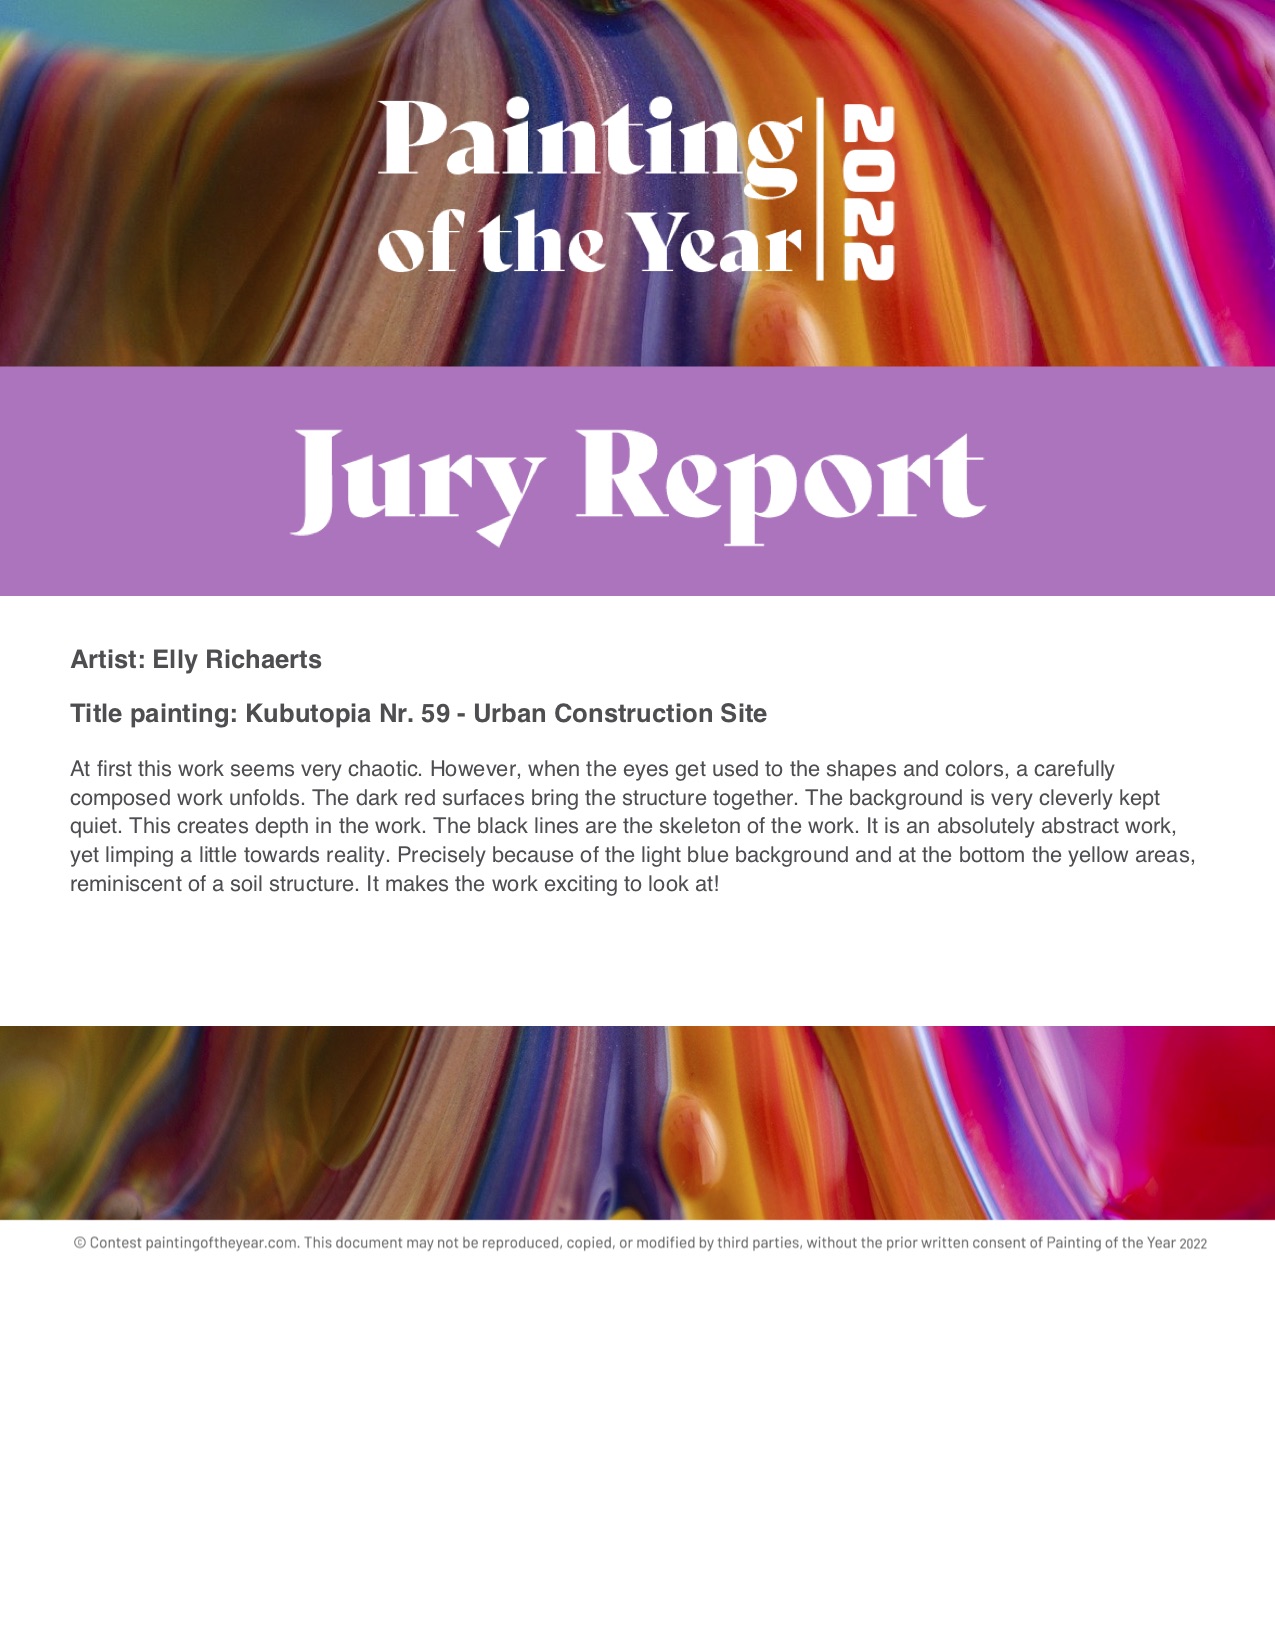 jury rapport 2022